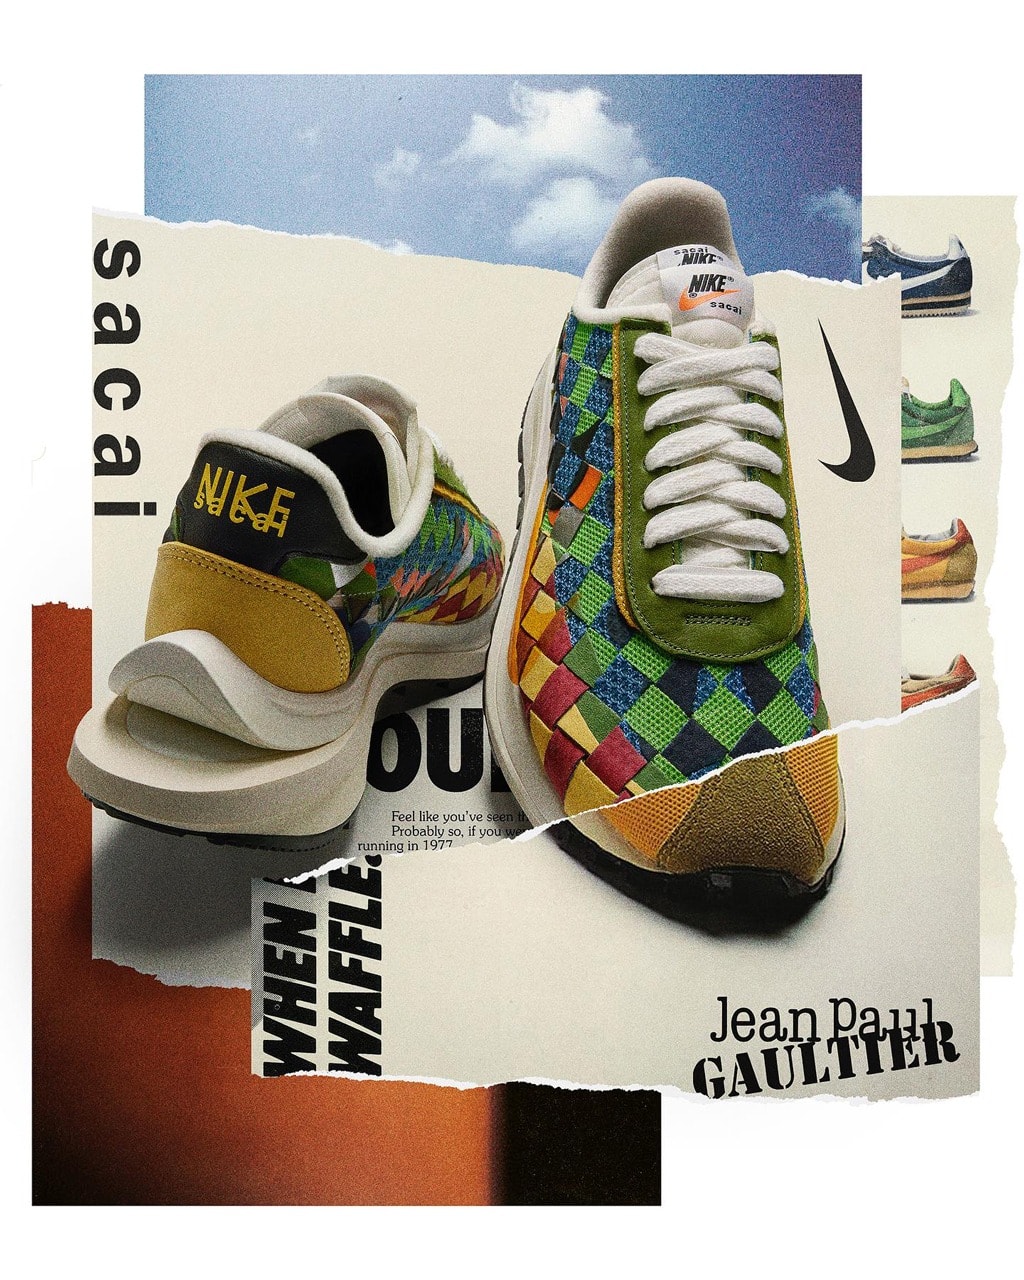 Jean Paul Gaultier x sacai x Nike 全新三方聯名鞋款正式登場